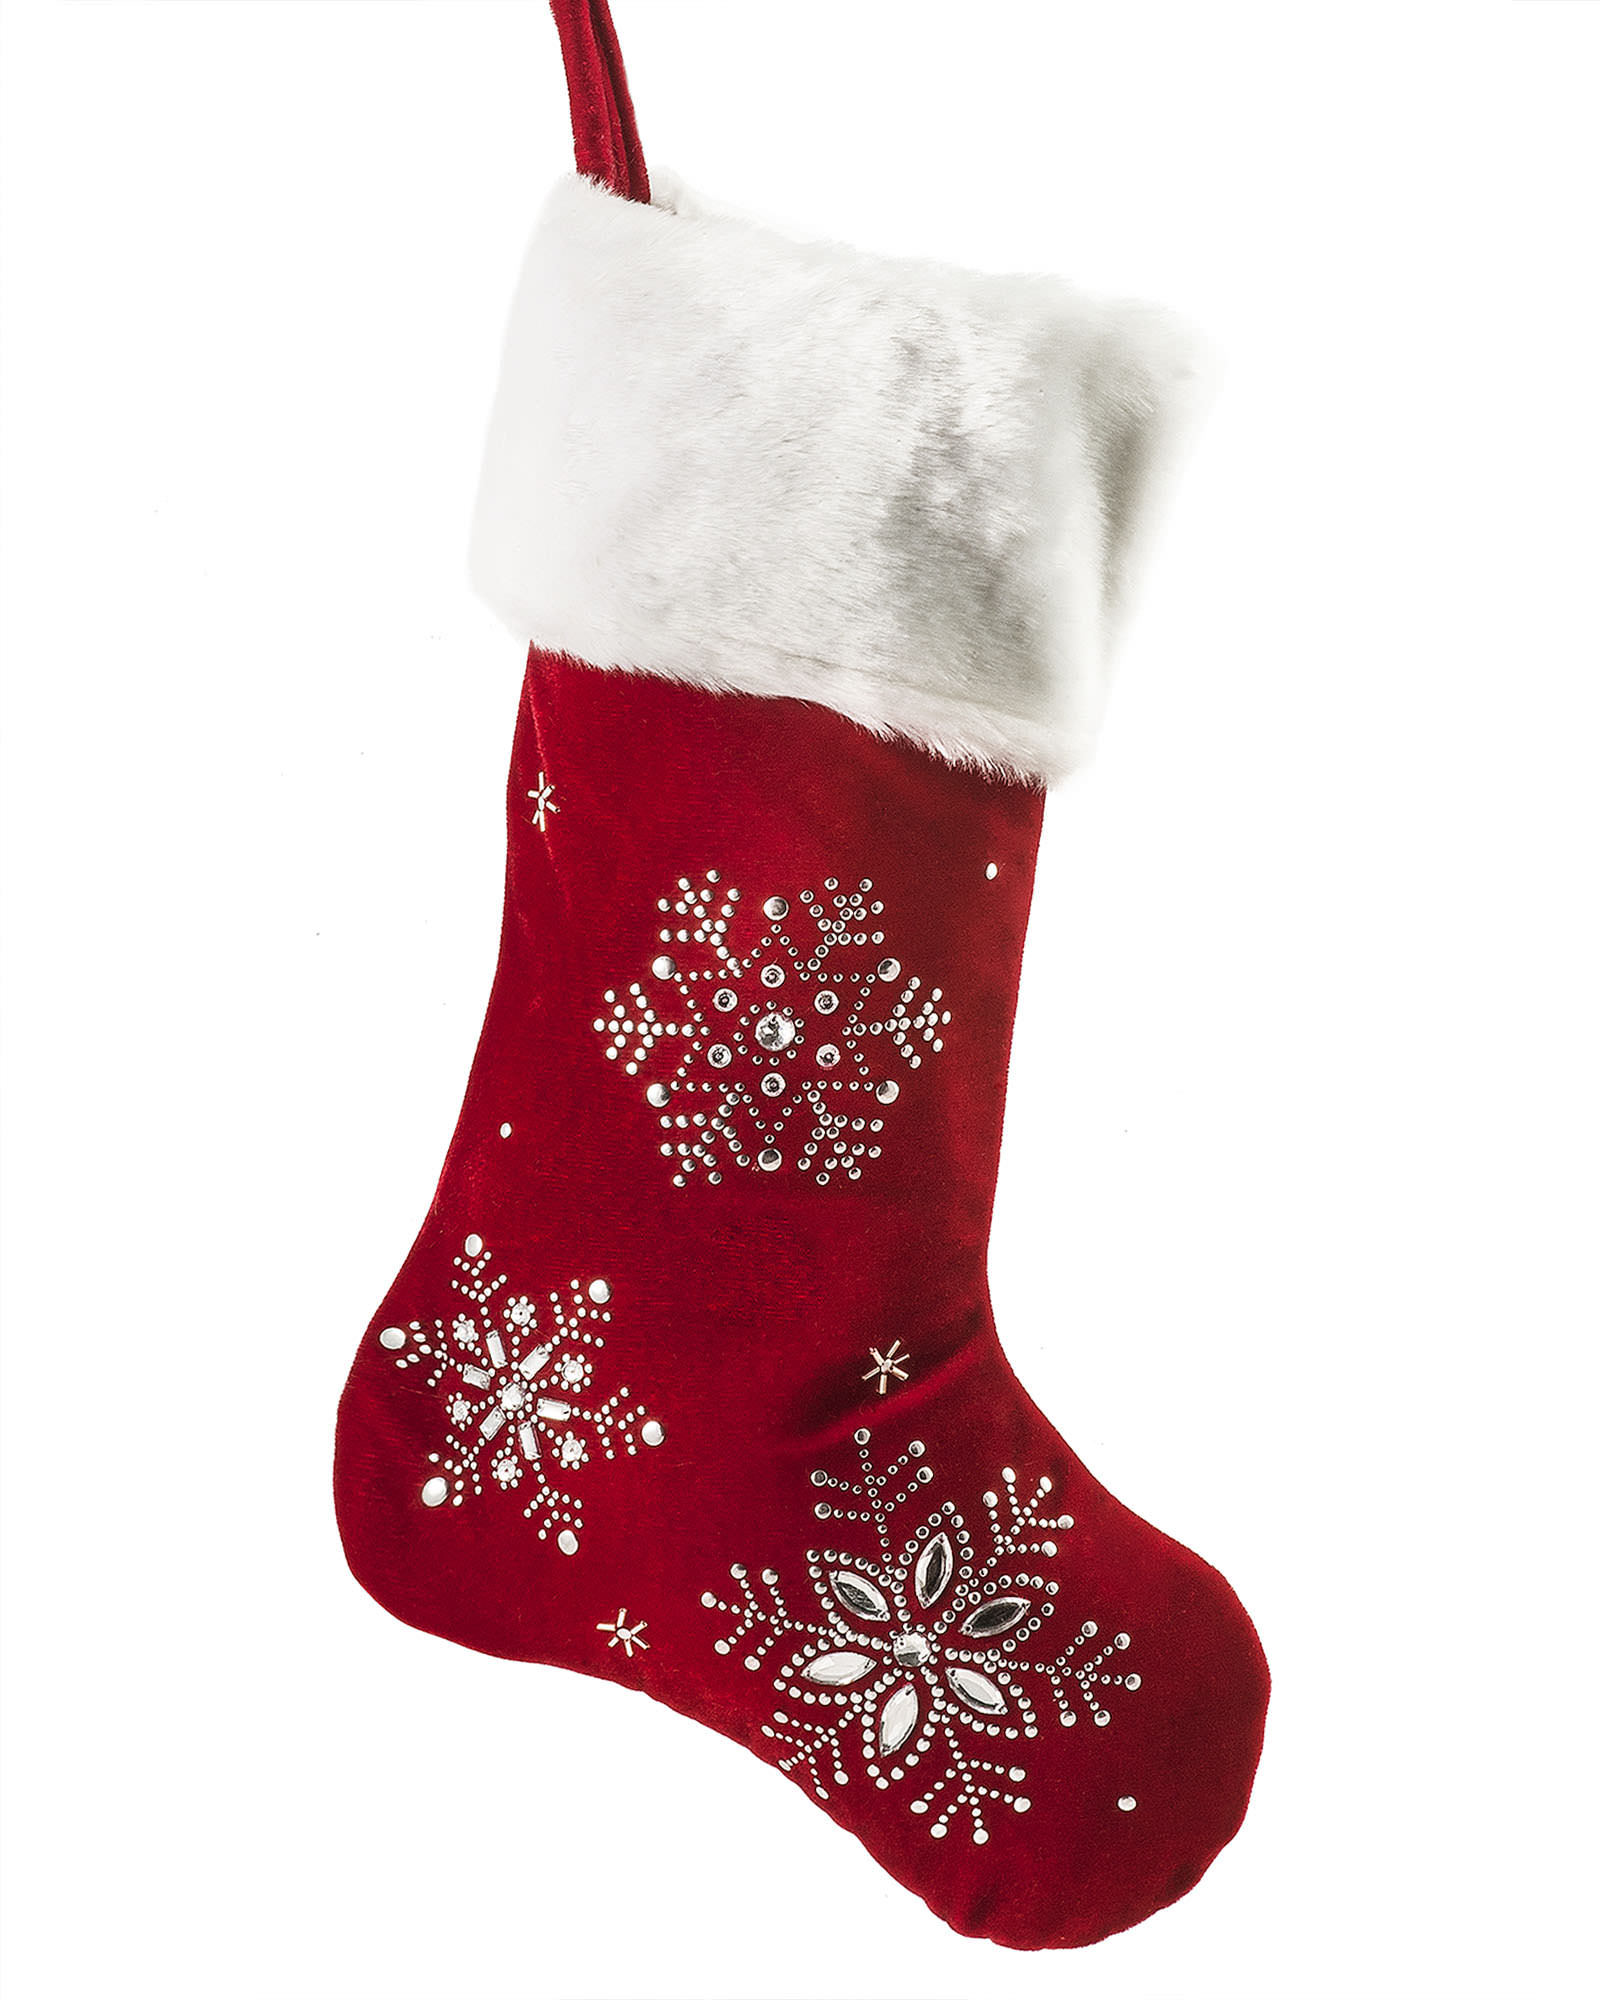 Christmas stockings photo